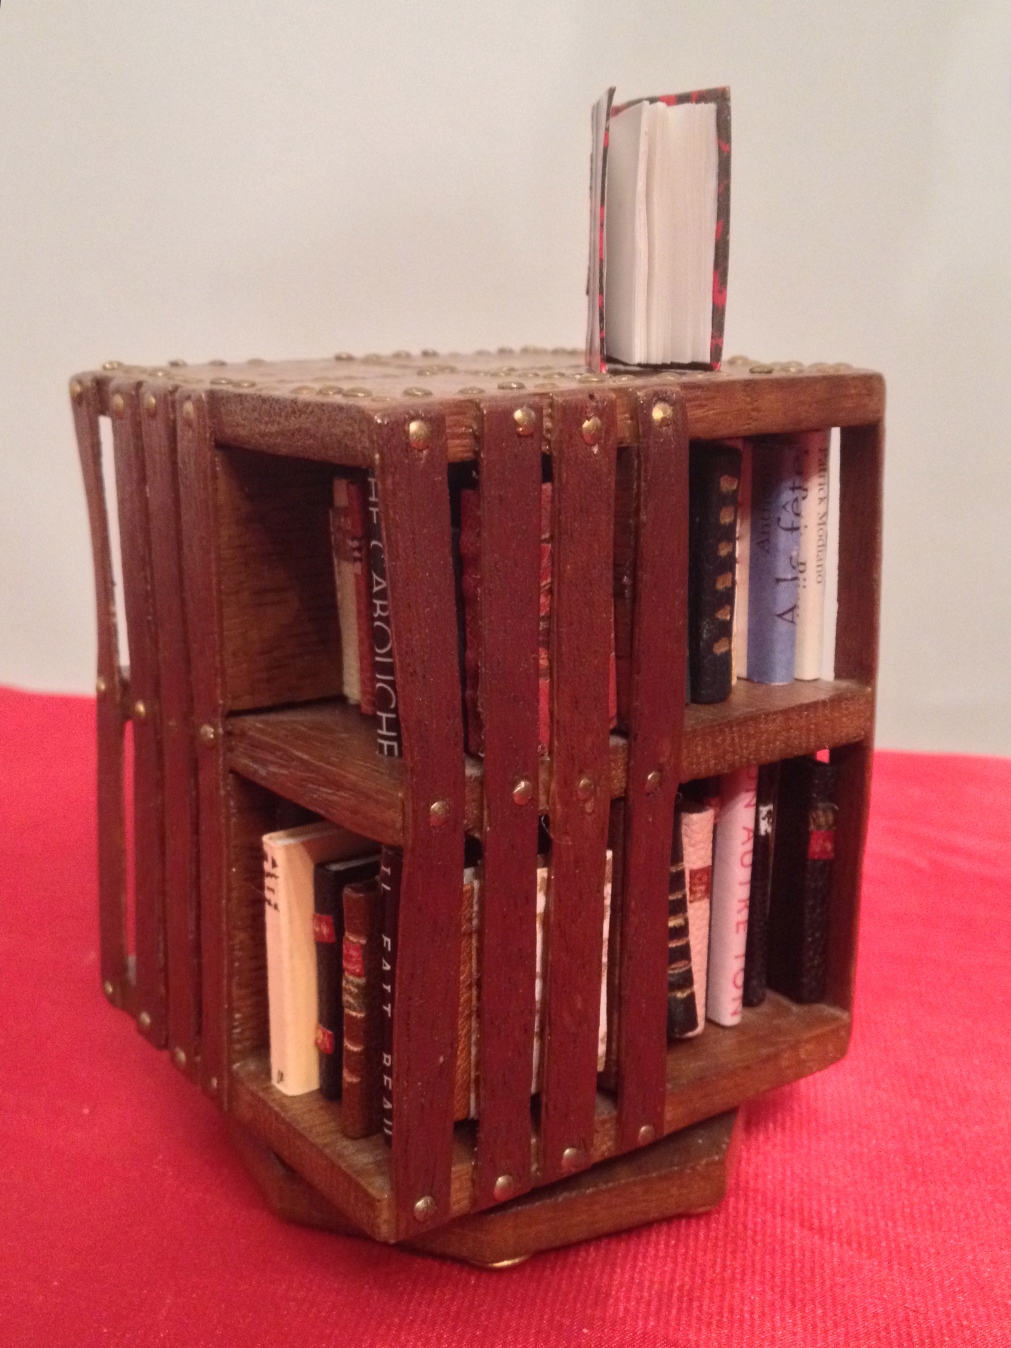 Mini bibliothèque Anglaise tournantr, base carrée de 7 cm de côté, hauteur 11cm, contenance : 61 mini_livres